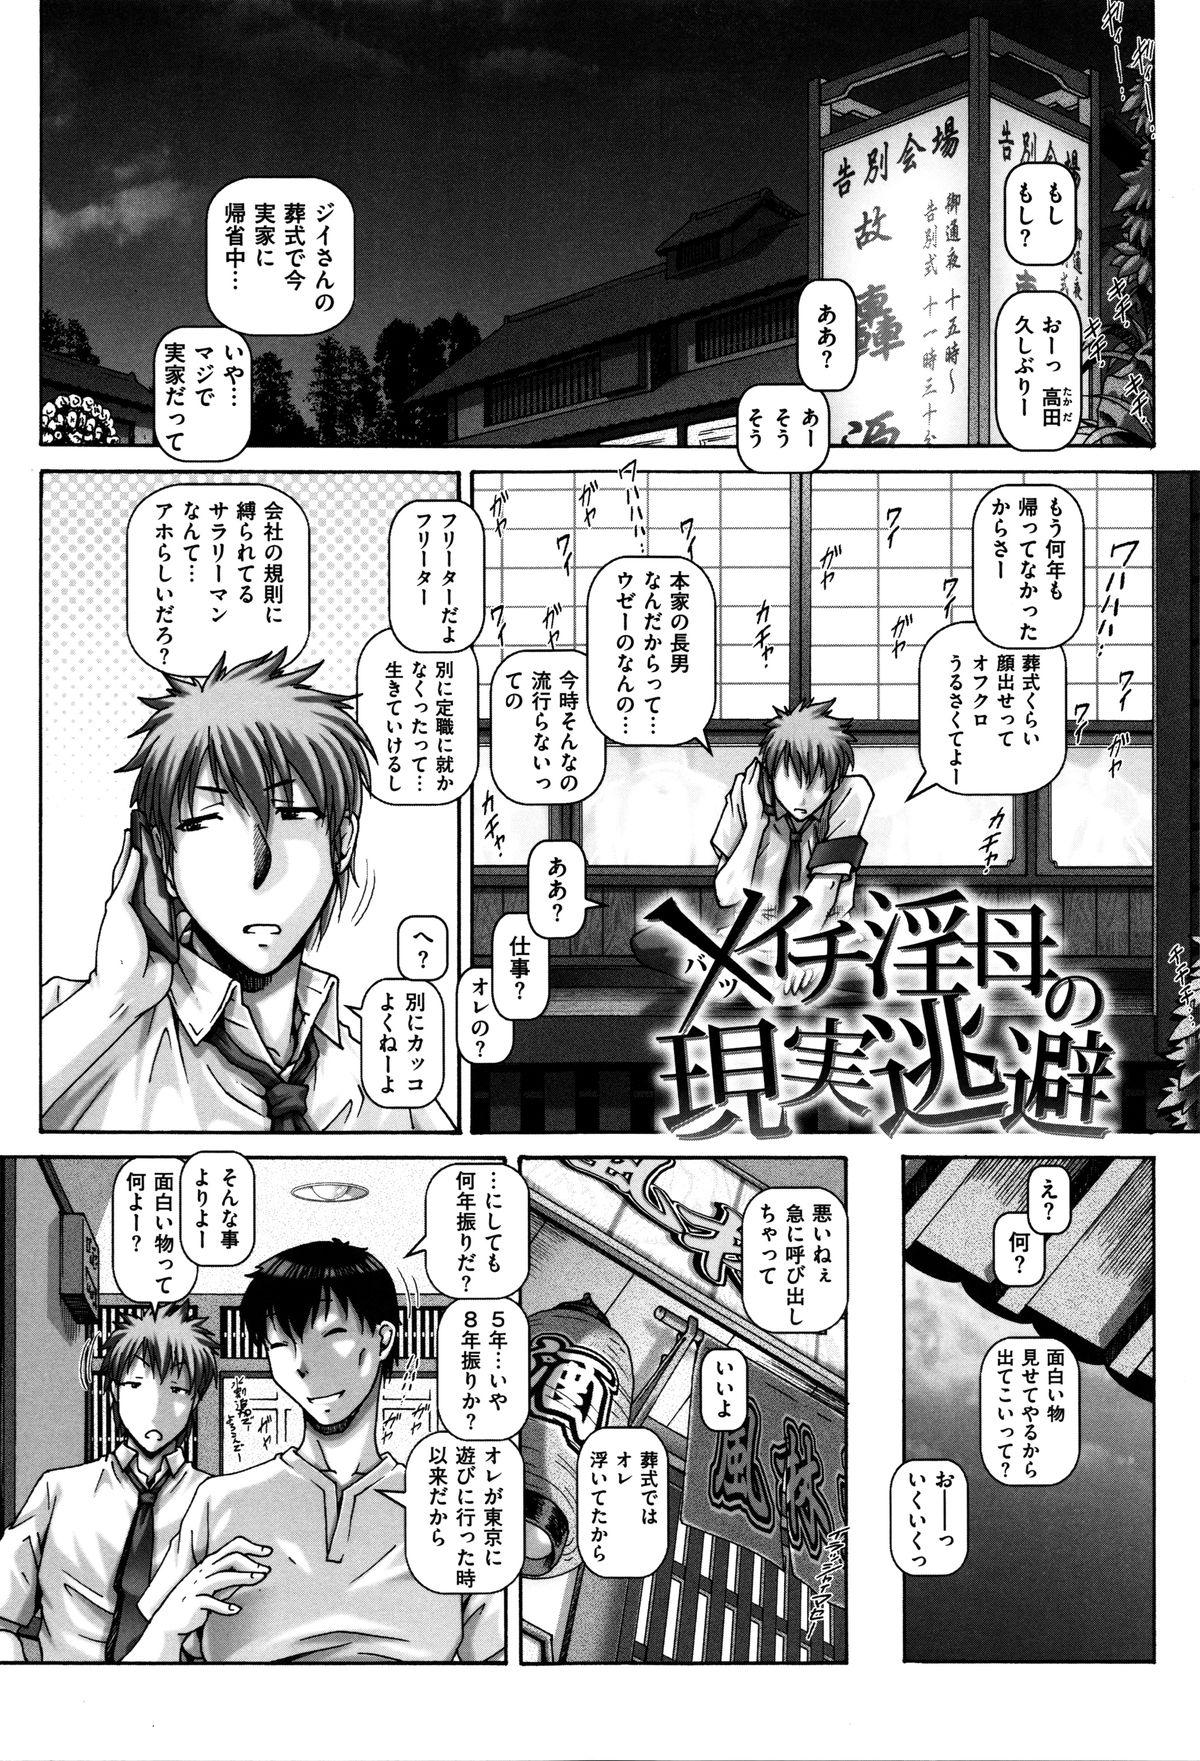 Classic Kachiku Ane - chapter 1,5,7 & 9 Naughty - Page 2